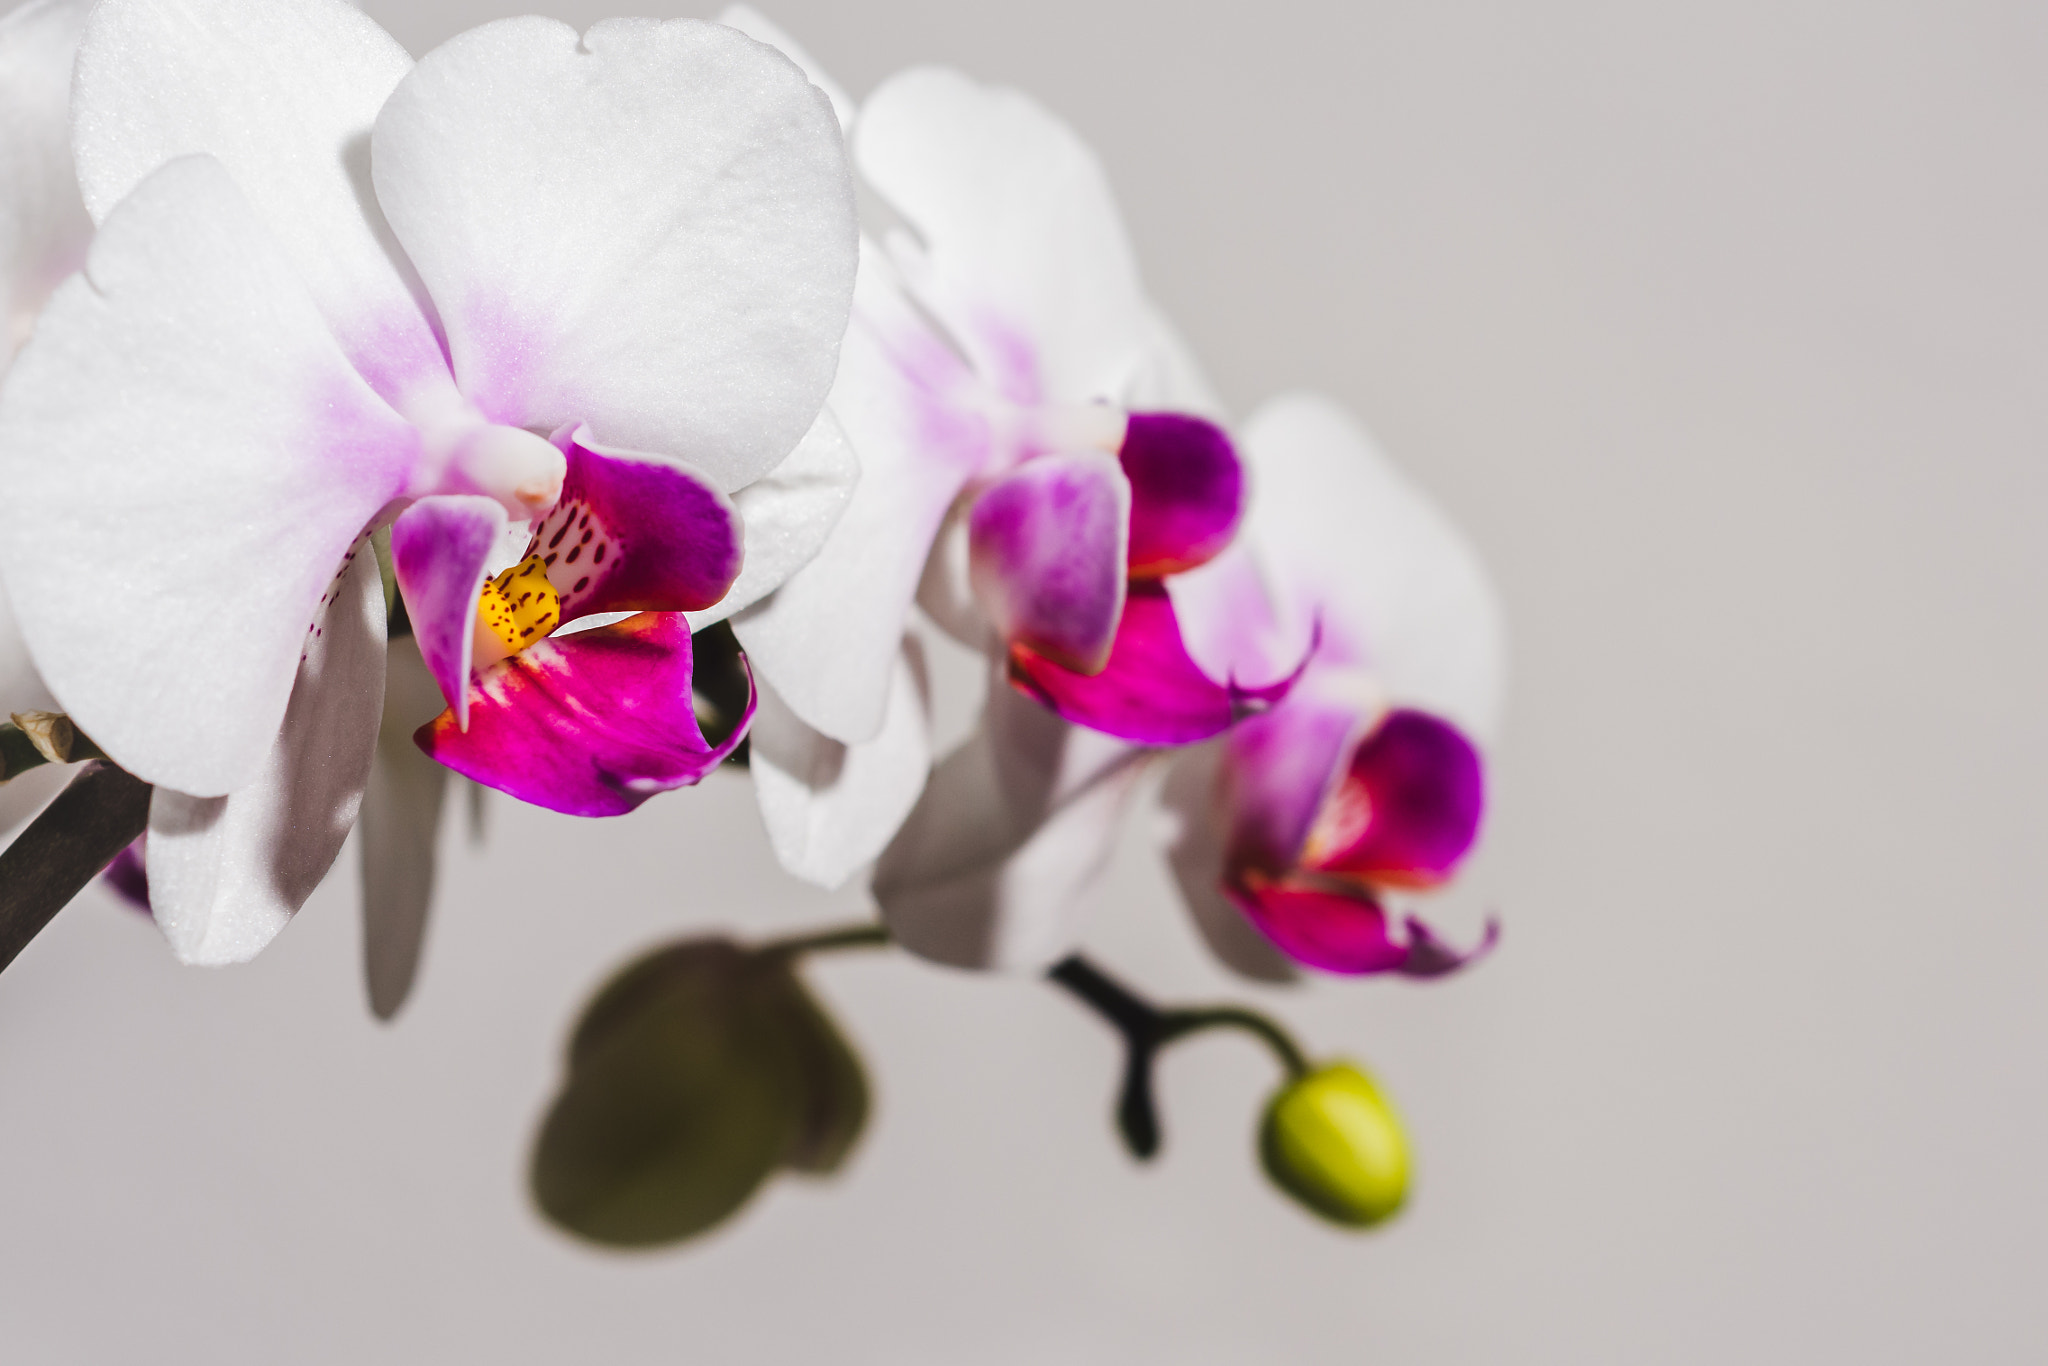 Nikon D7200 + AF Nikkor 50mm f/1.8 sample photo. White orchids photography